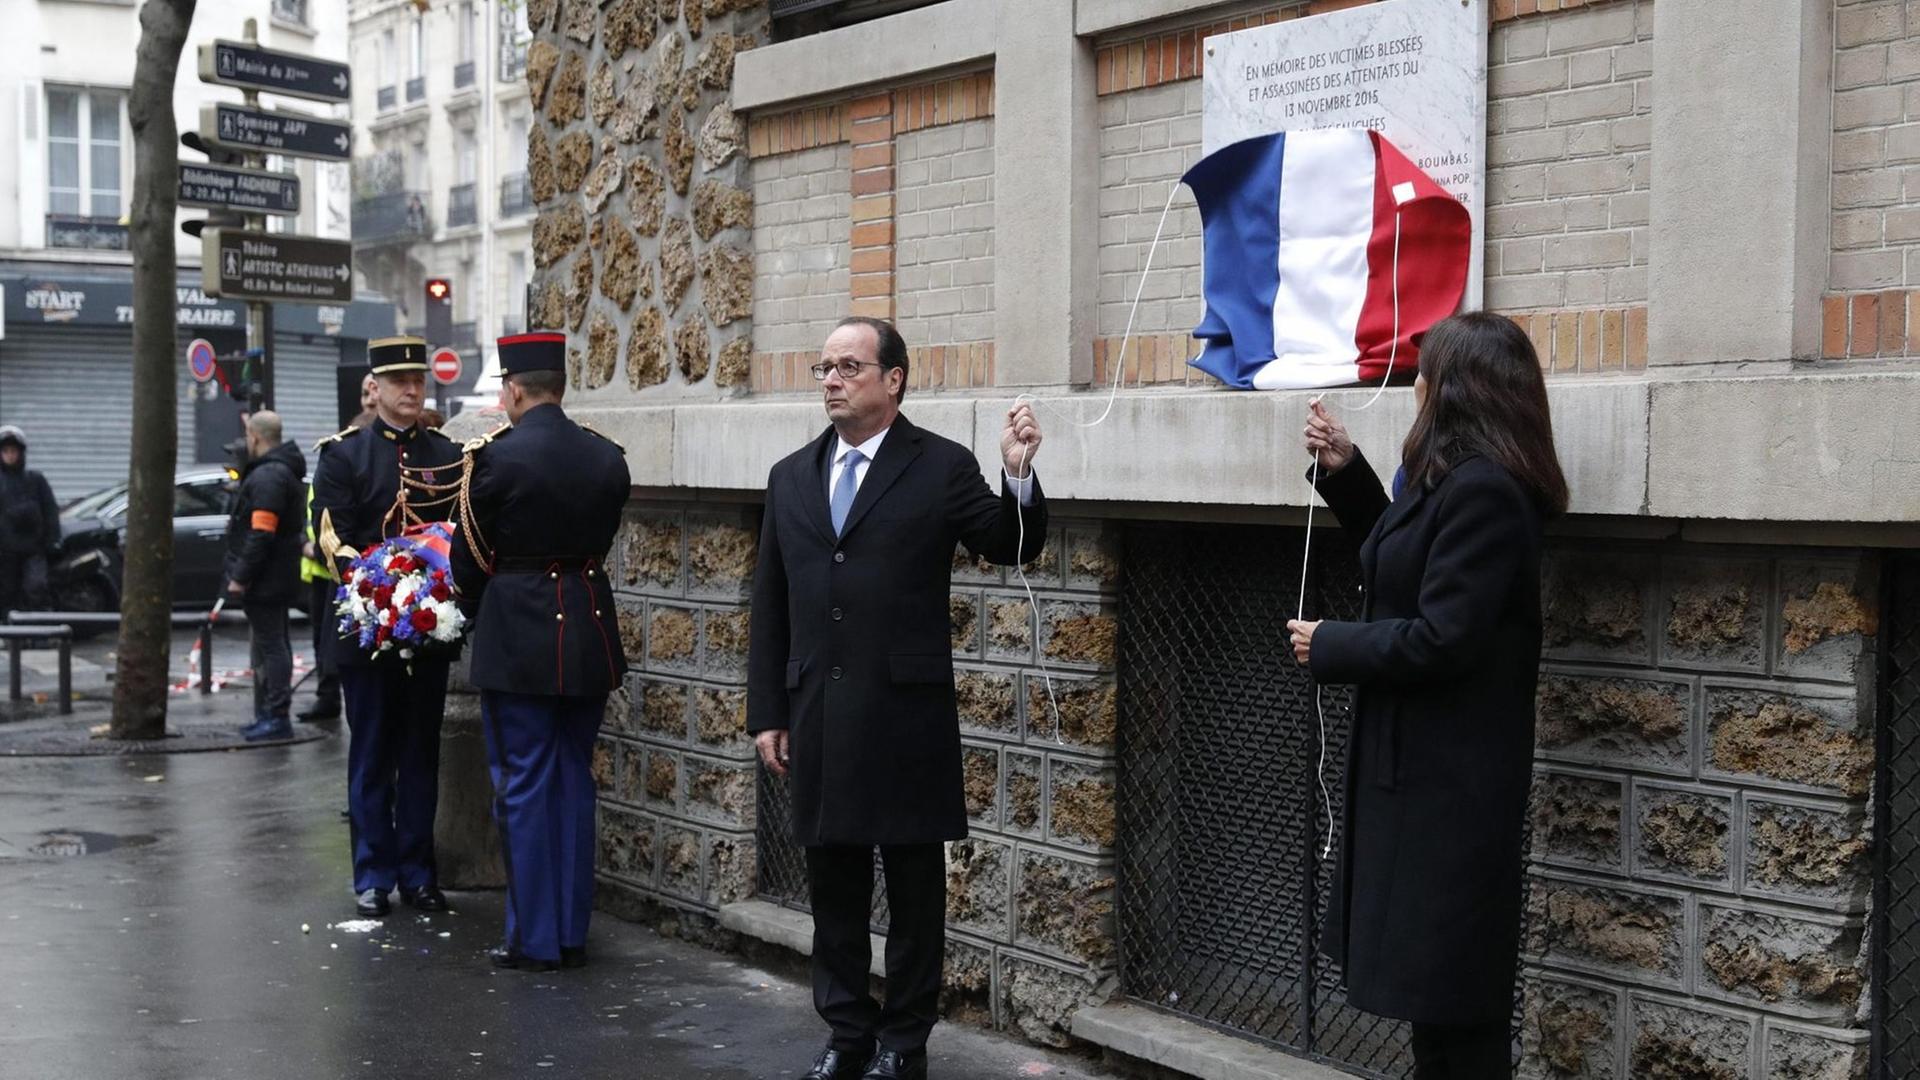 Frankreichs Präsident Francois Hollande und die Bürgermeisterin von Paris, Anne Hidalgo, bei der Enthüllung einer Gedenktafel für die Opfer der Terroranschläge am 13. November 2015.